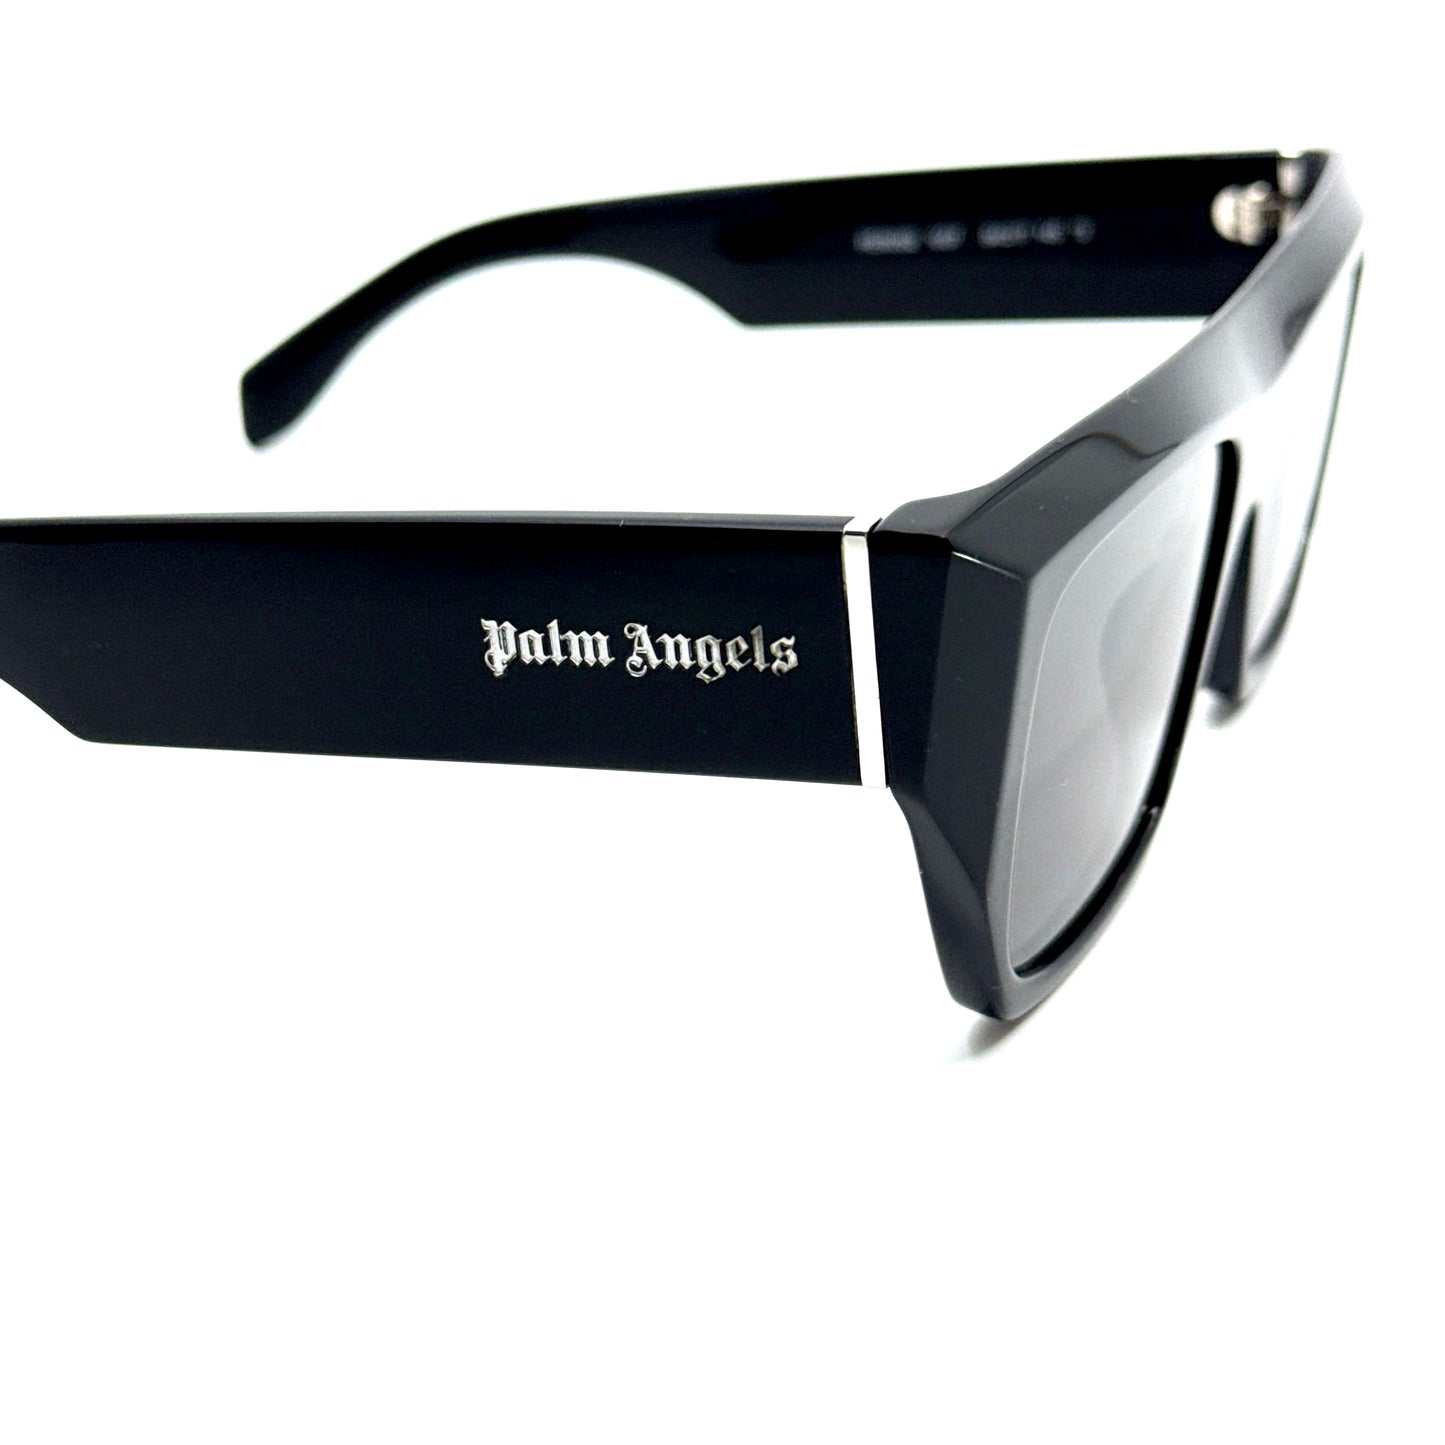 PALM ANGELS Sunglasses PERI052 1007